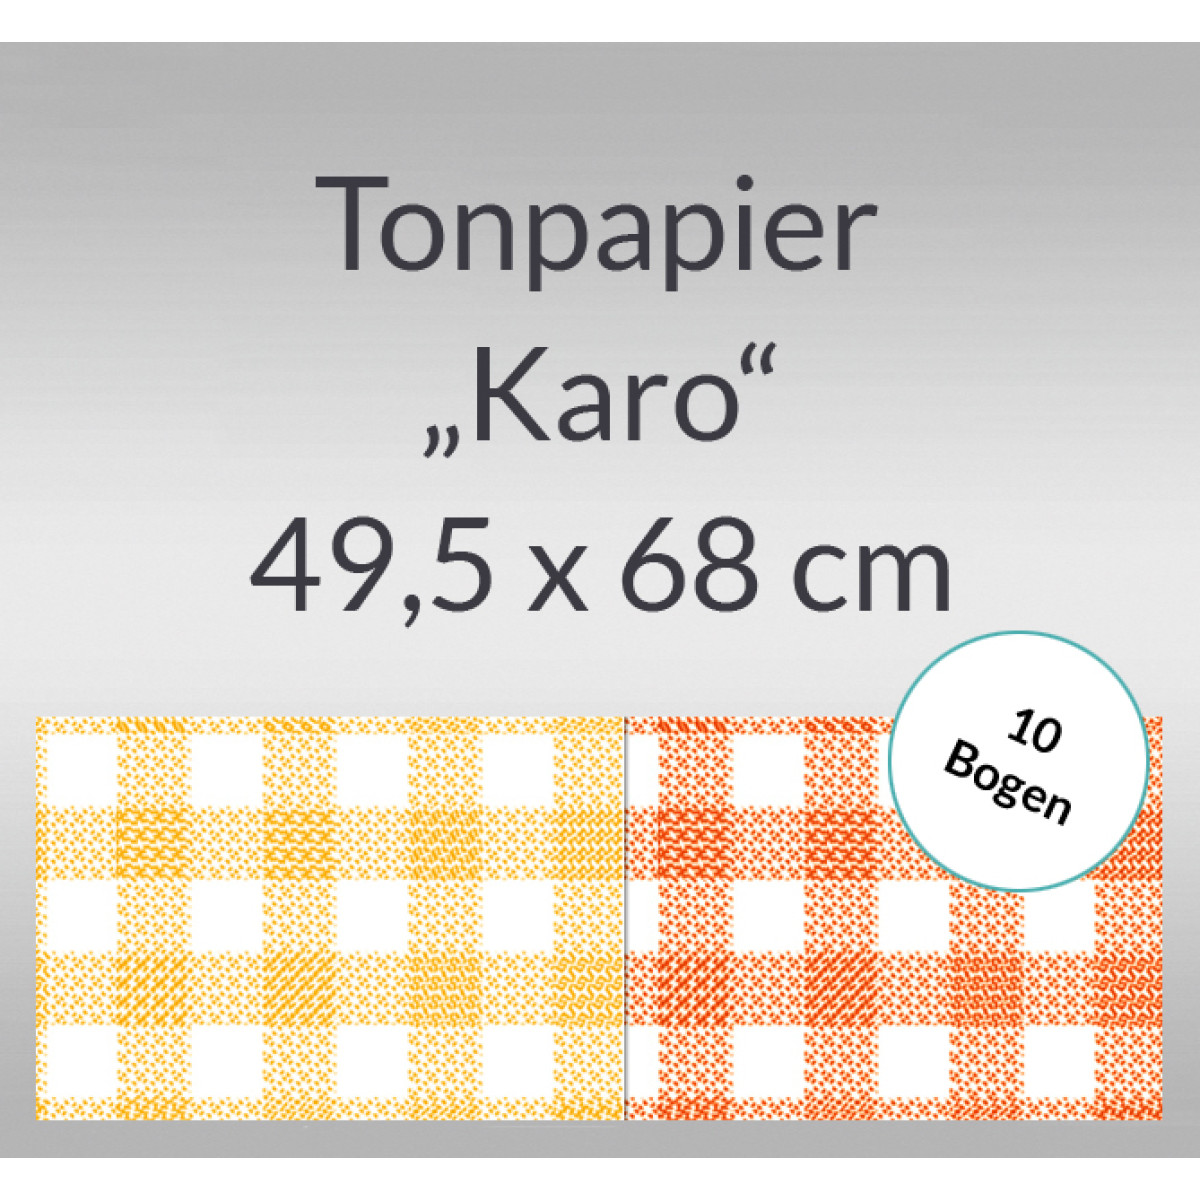 Karo-Tonzeichenpapier 130 g/qm 49,5 x 68 cm - 10 Bogen